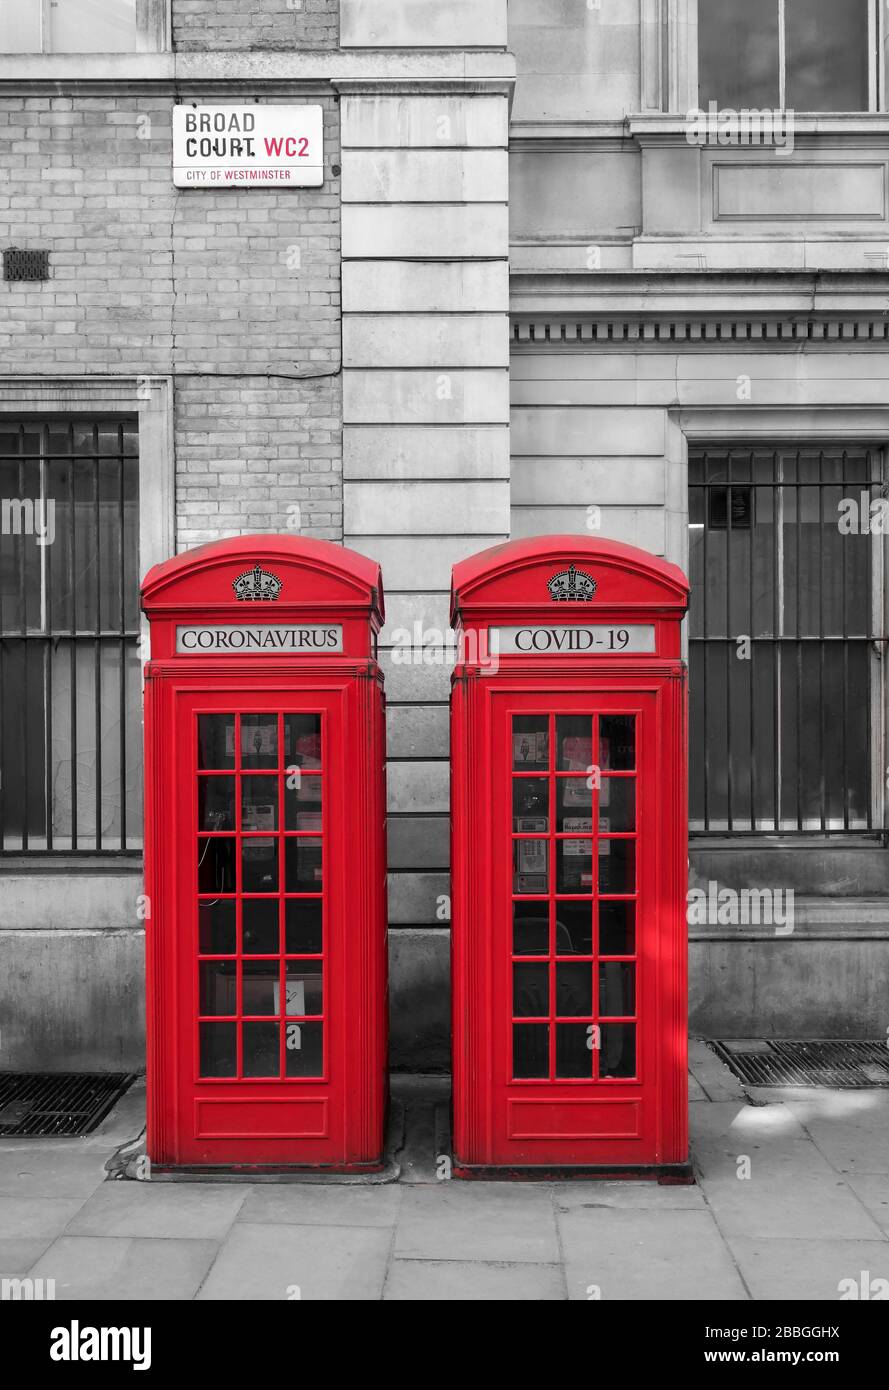 Coronavirus o Covid 19 Ilustración sobre las cajas de teléfonos rojas británicas, Londres, Inglaterra, Reino Unido Foto de stock